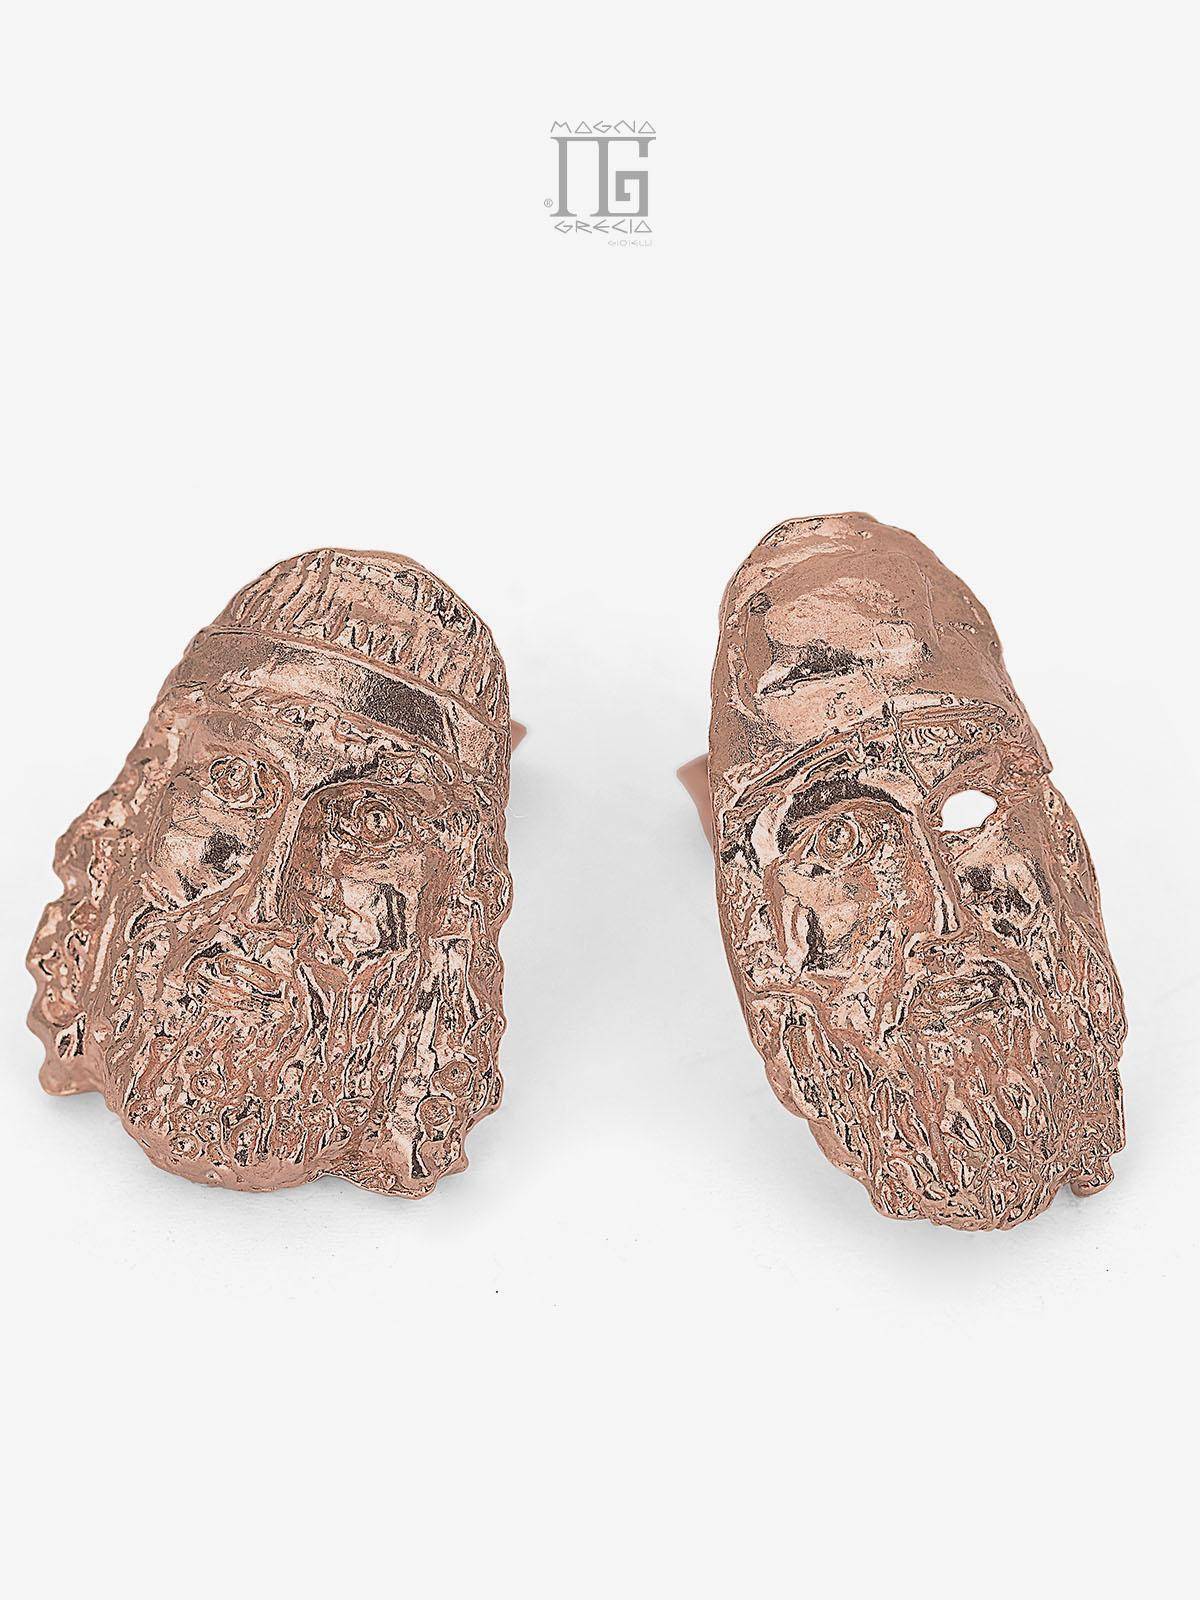 Pendientes de plata que representan el rostro de los Bronces de Riace Cod. MGK 4117 V